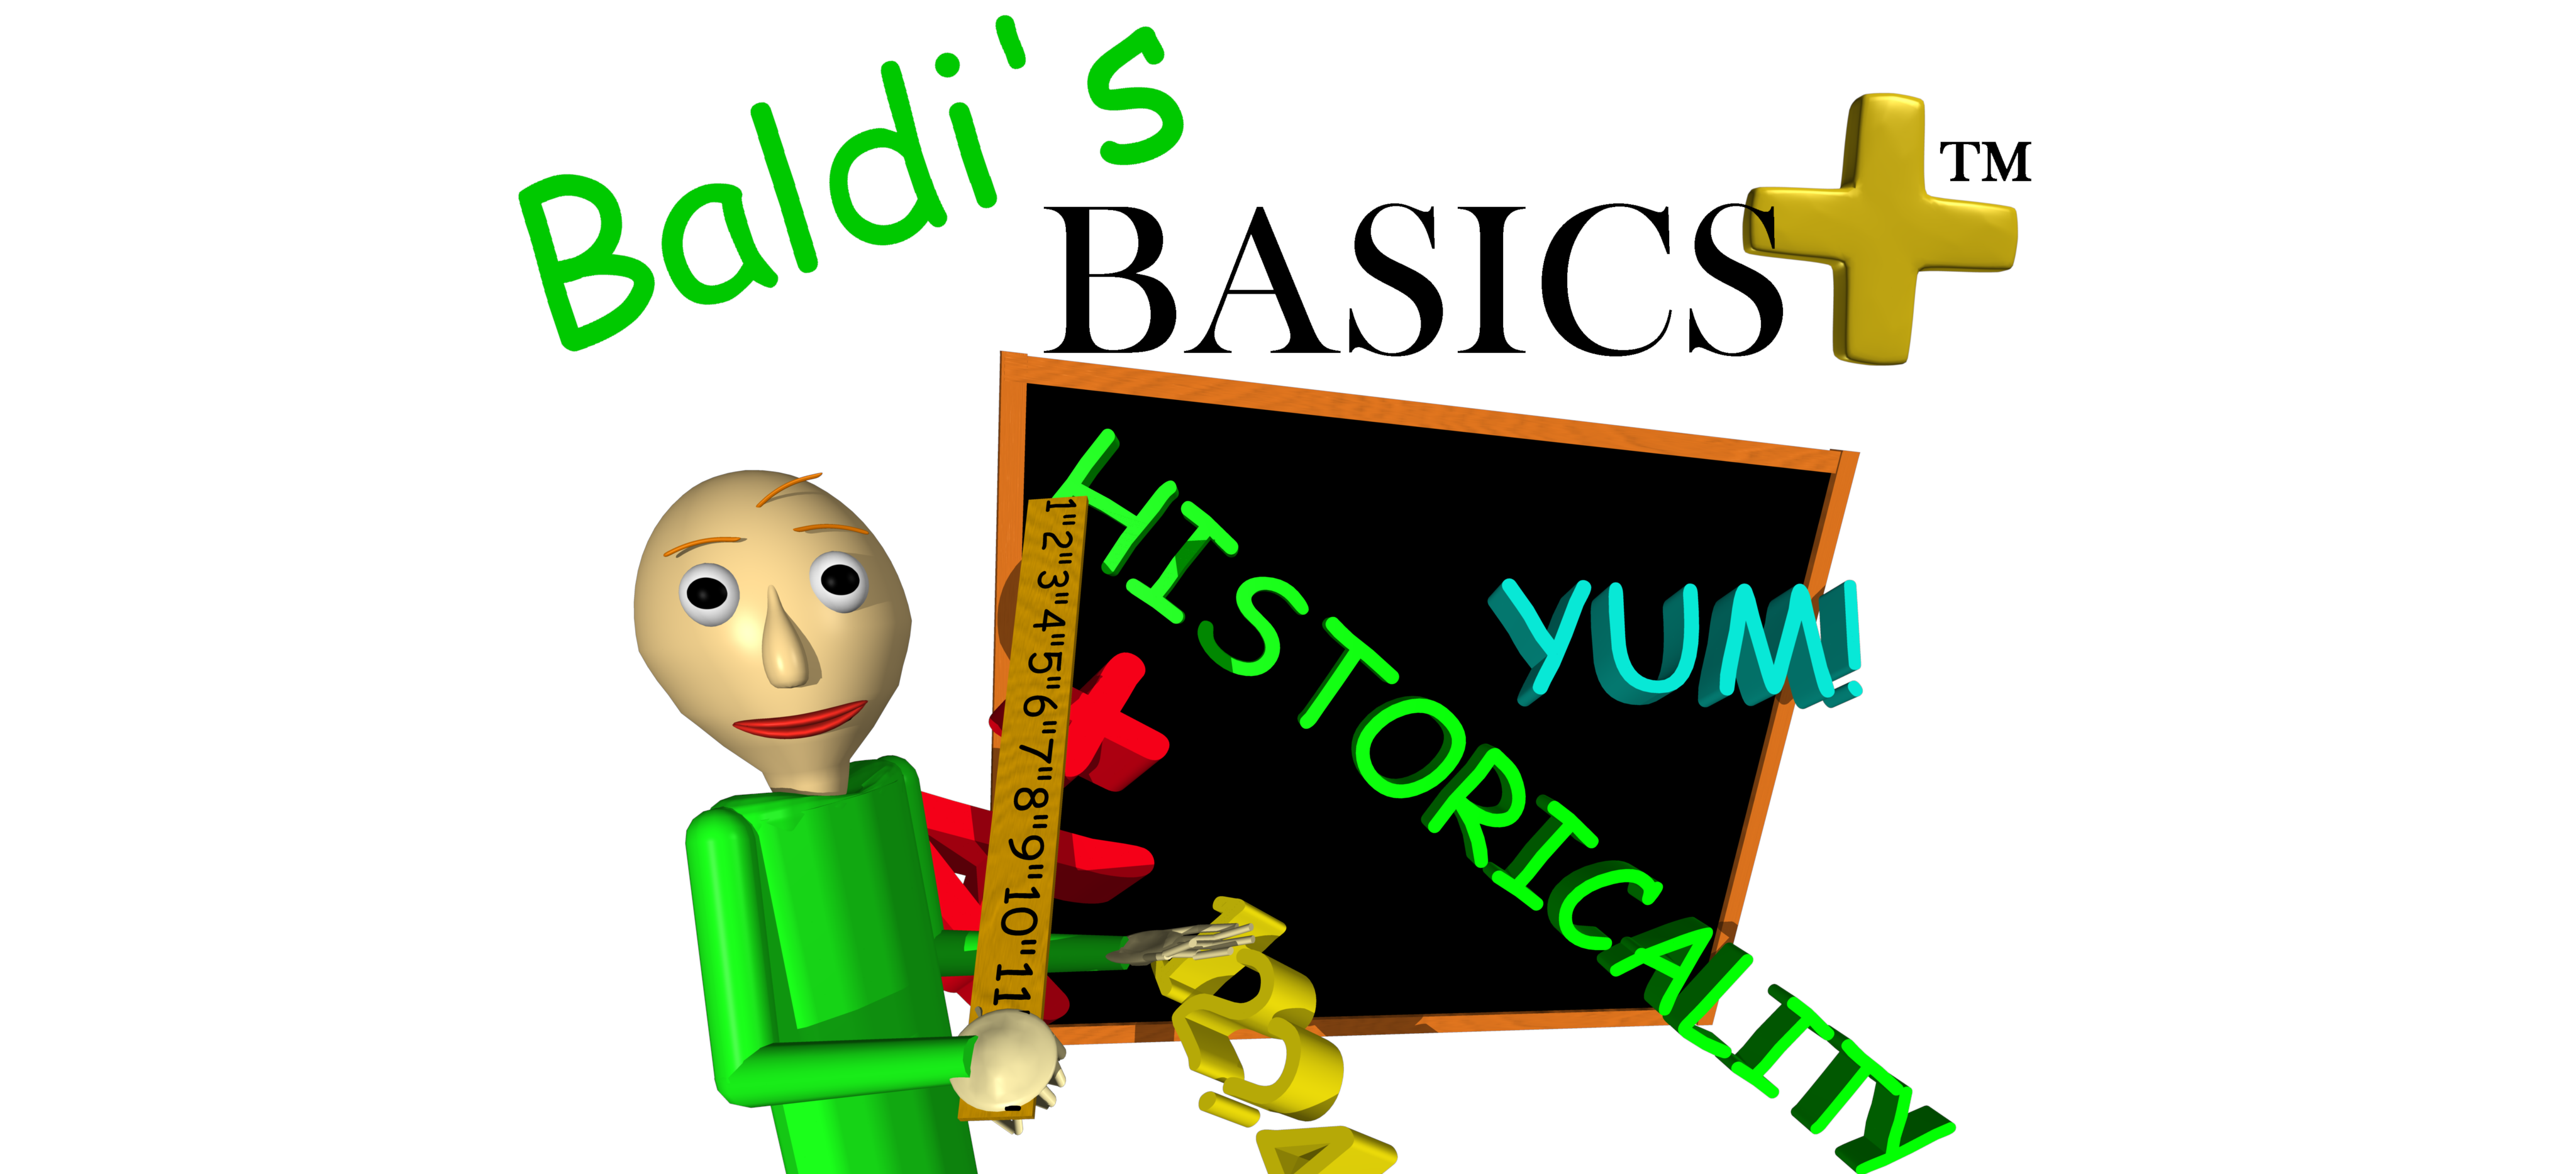 baldis basics free download